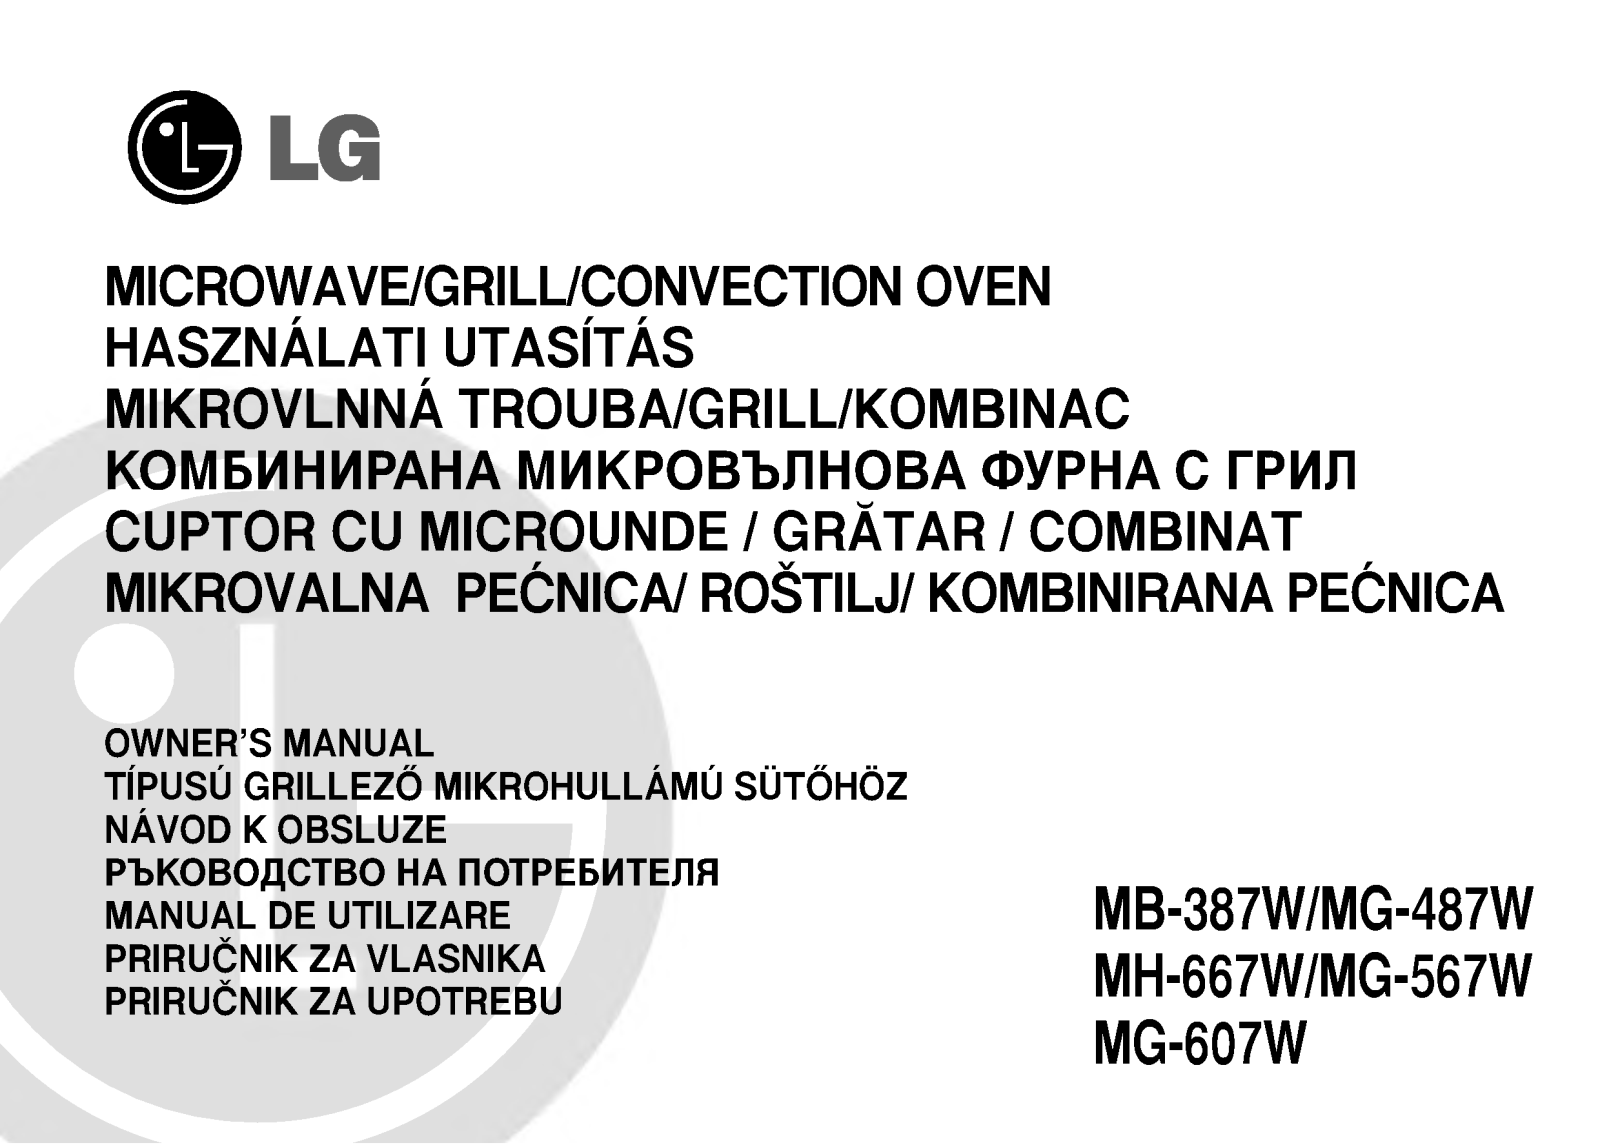 Lg MG-607W, MG-567W, MH-667W, MB-387W, MG-487W User Manual